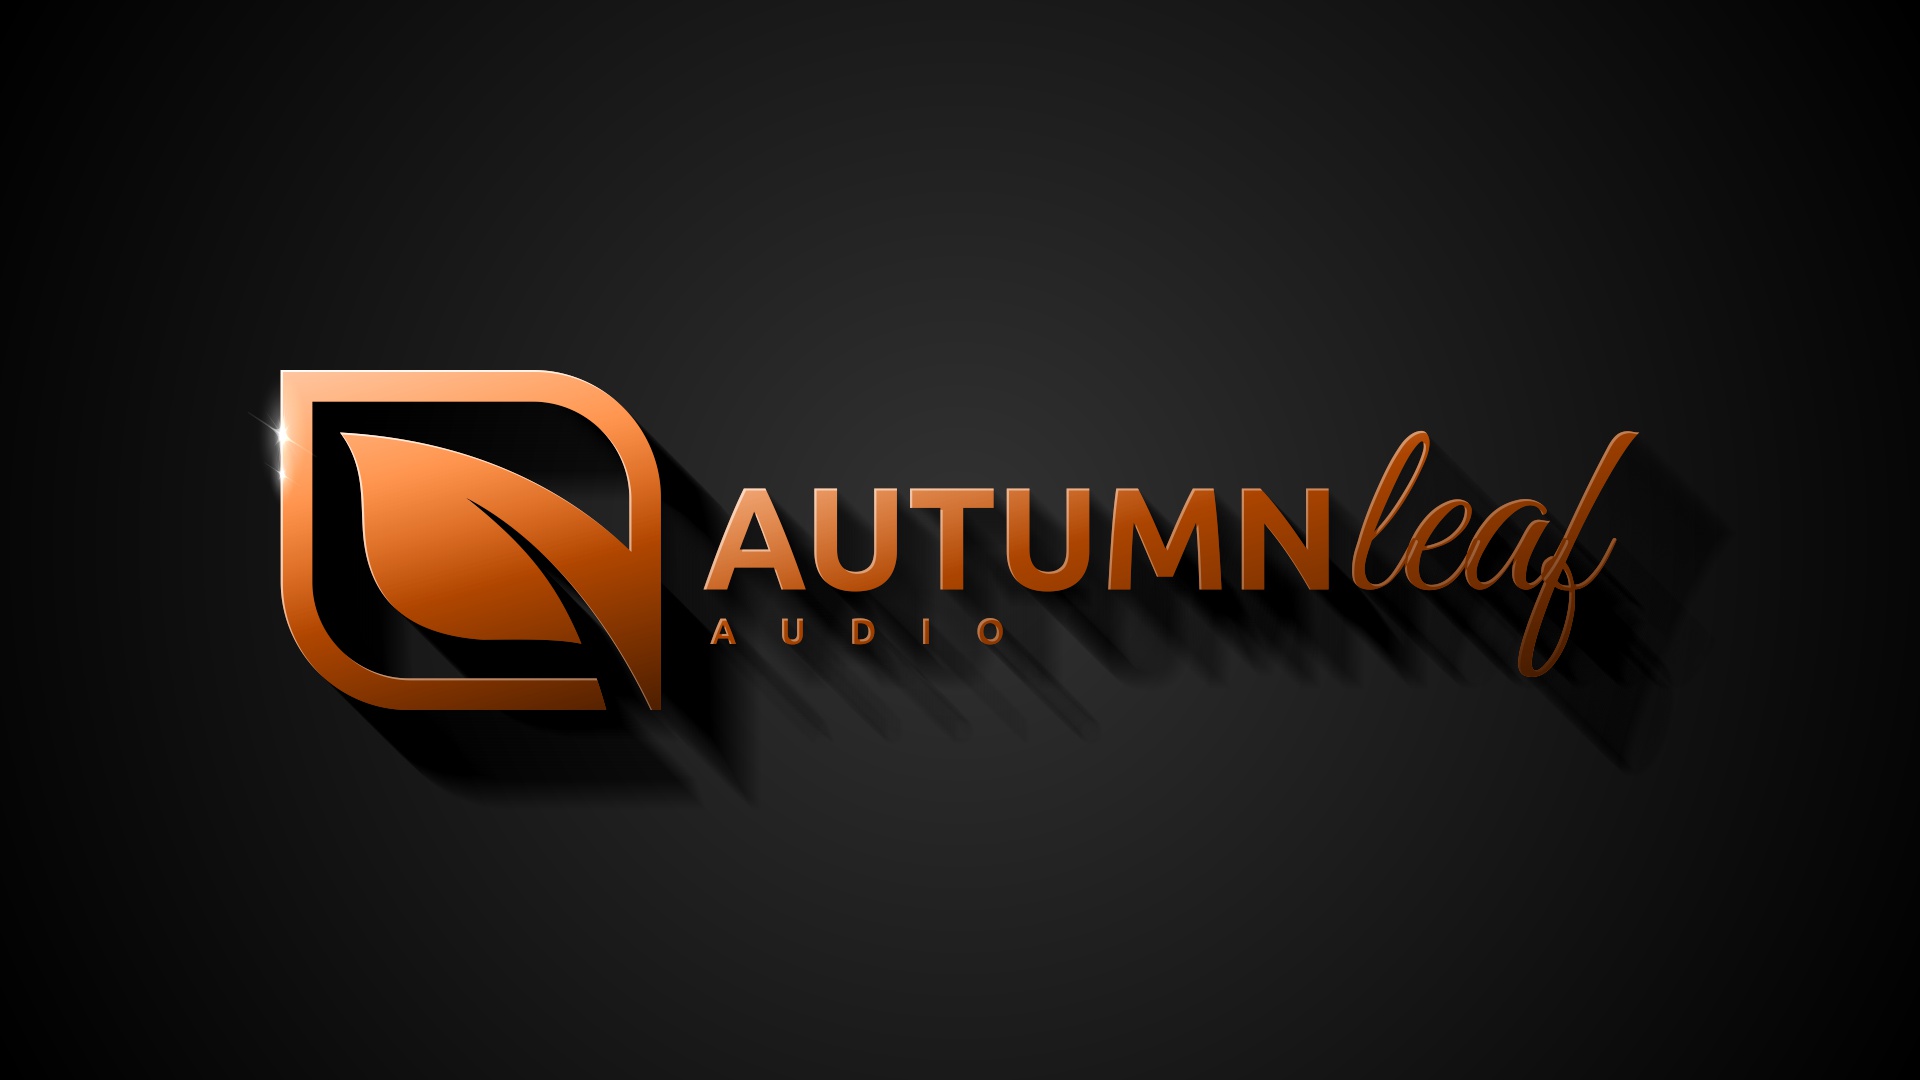 Para a Autumn Leaf Audio as “demonstrações domiciliárias” são a melhor solução para a sinergia dos aparelhos